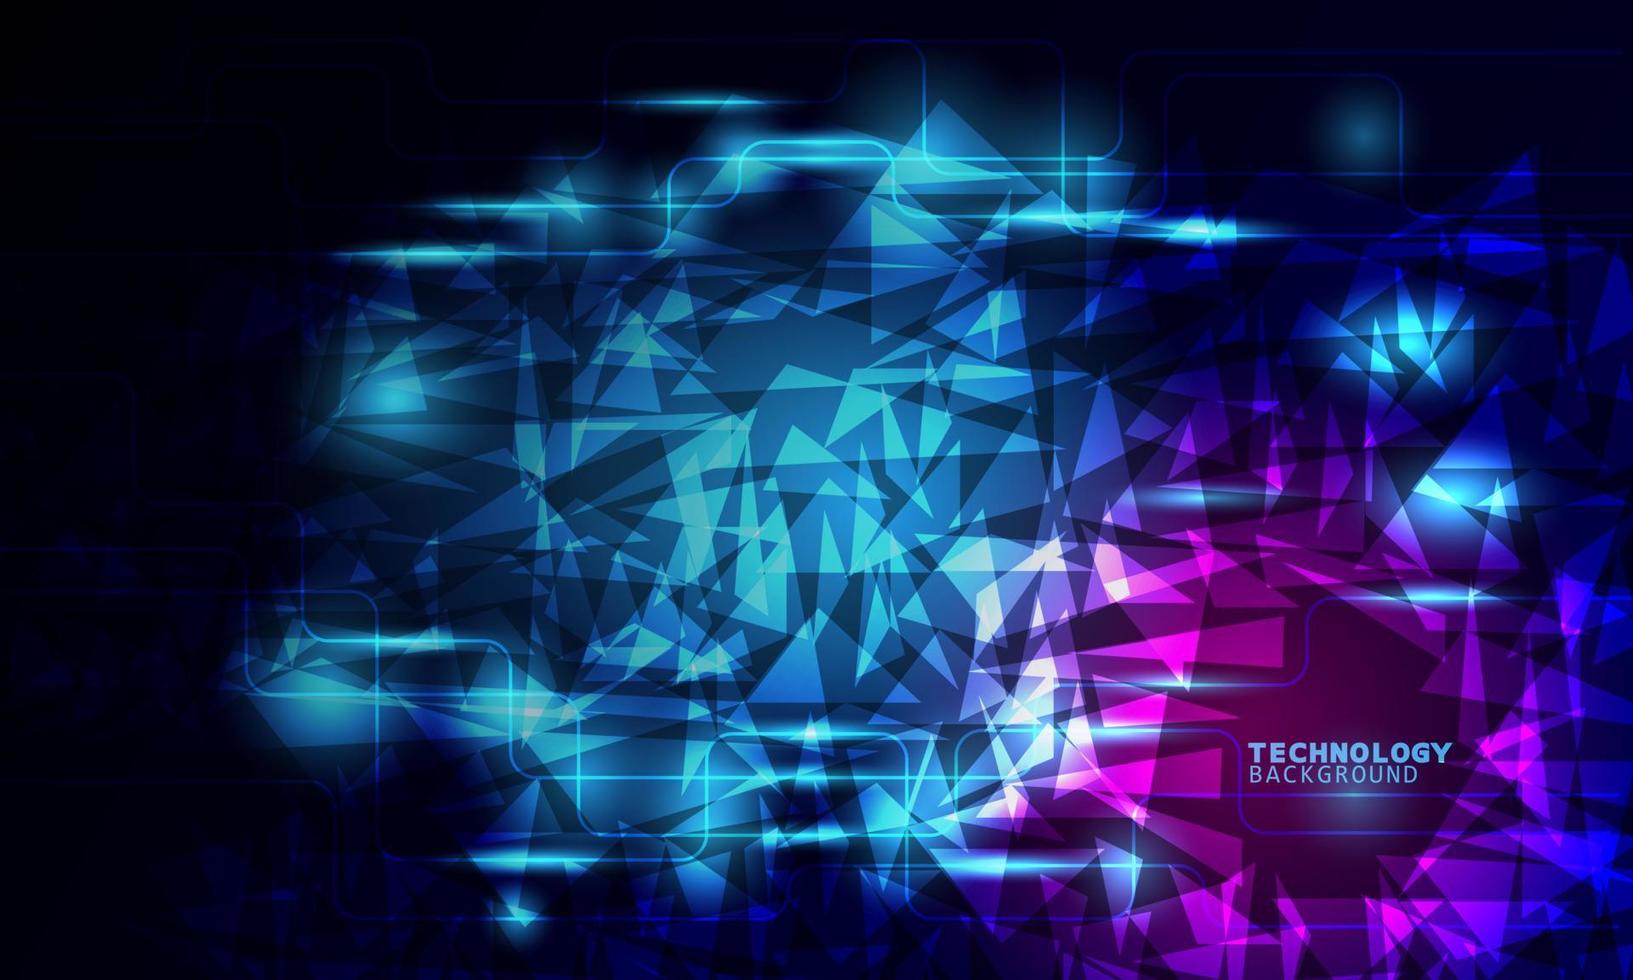 vektor illustration teknik med trianglar över mörkblå och rosa bakgrund.